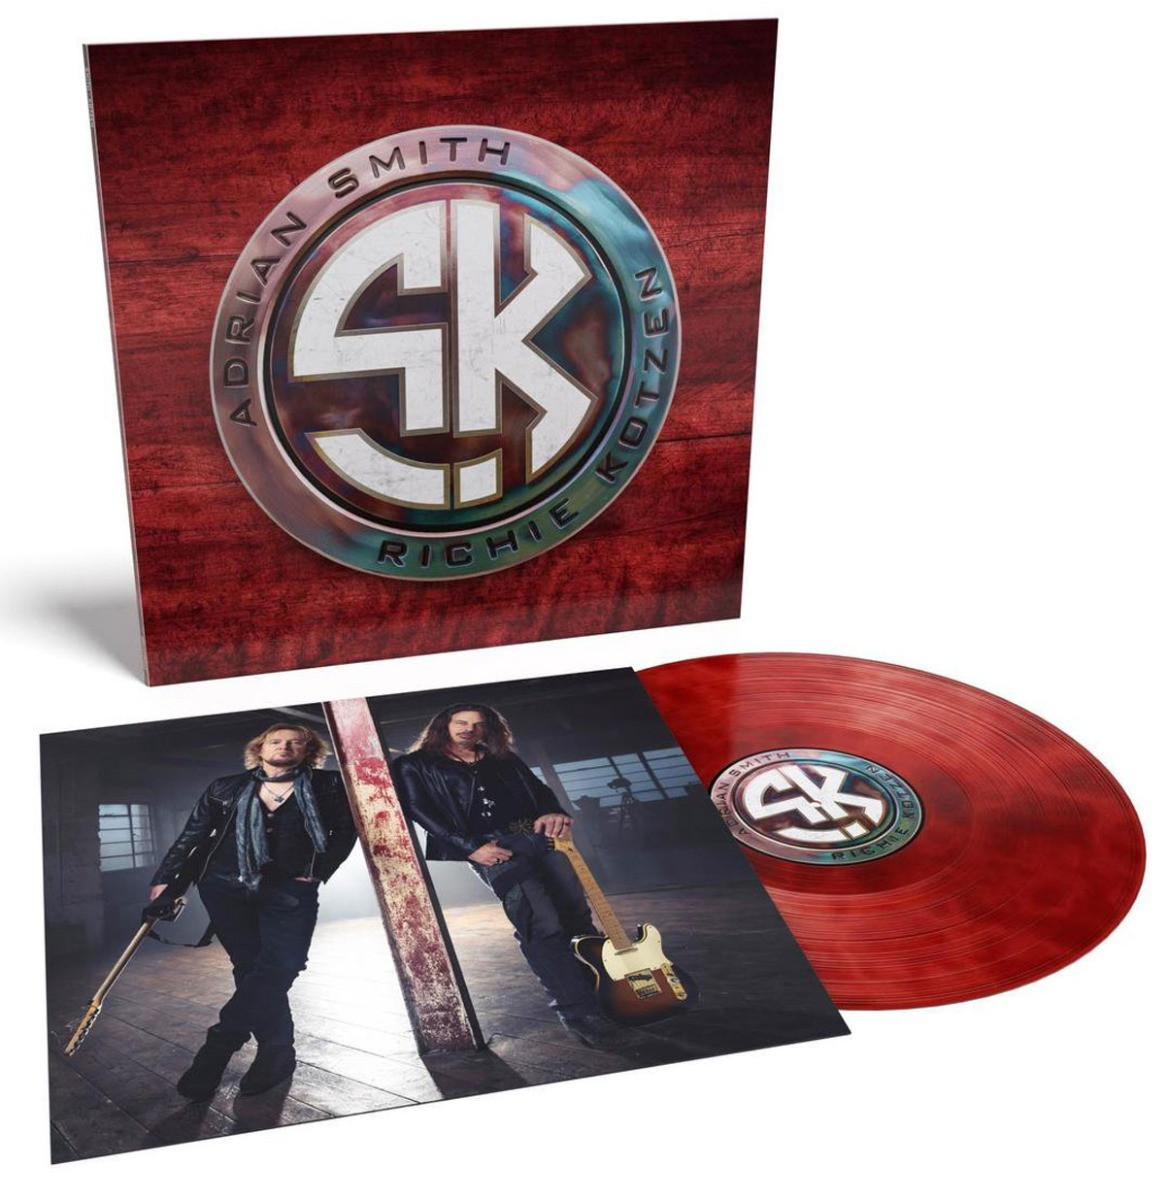 Adrian Smits & Richie Kotzen - Smith/Kotzen LP - Rood/Zwart Rook Gekleurd Vinyl - Beperkte Oplage